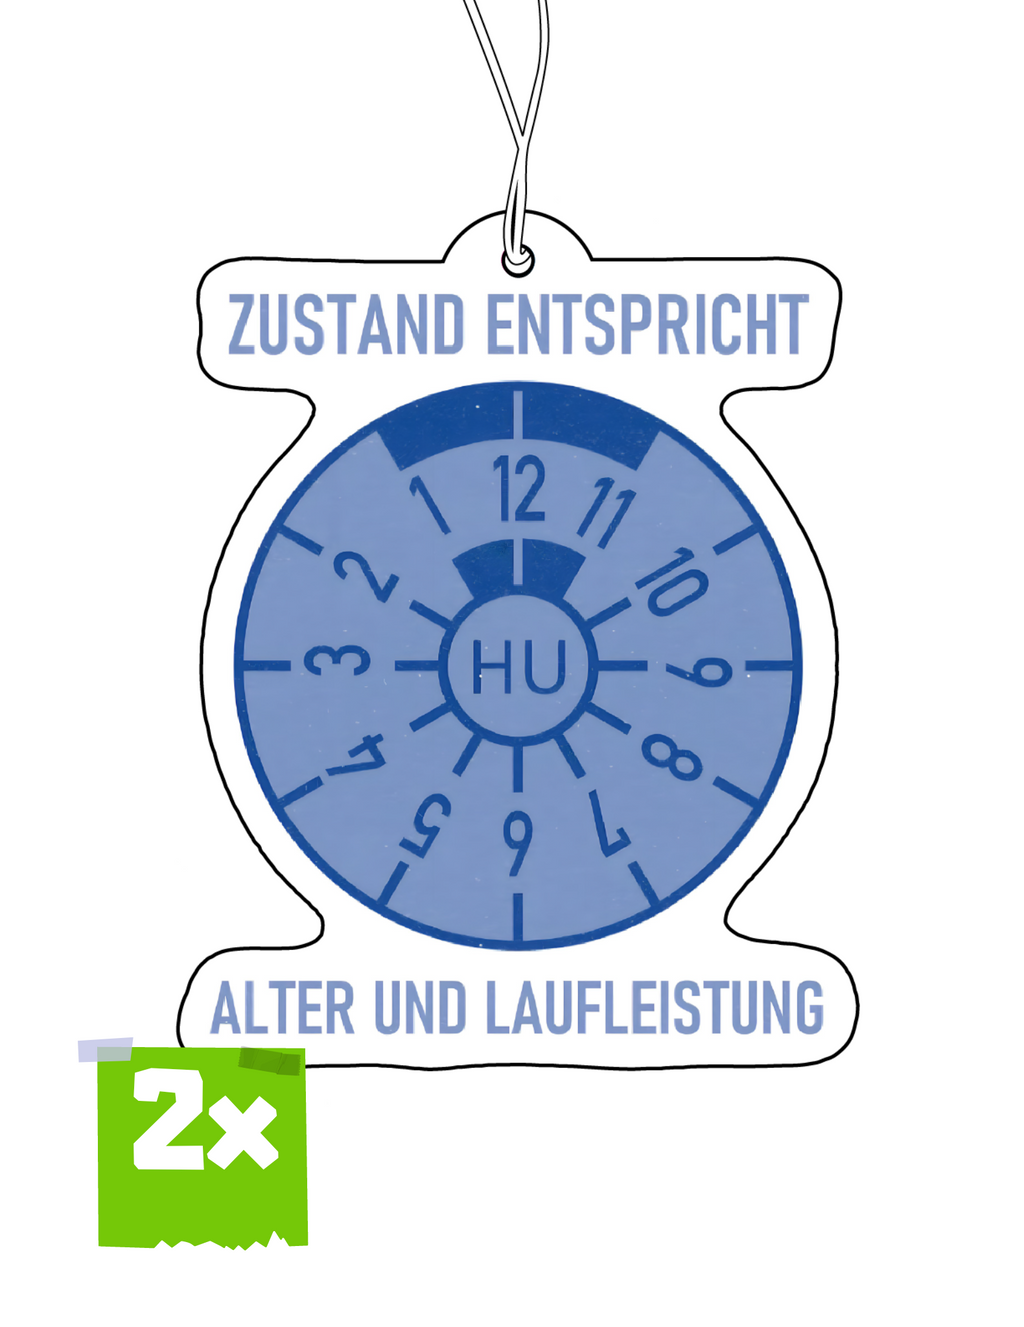 2x ZUSTAND ENTSPRICHT ALTER UND LAUFLEISTUNG Duftbaum / Lufterfrischer